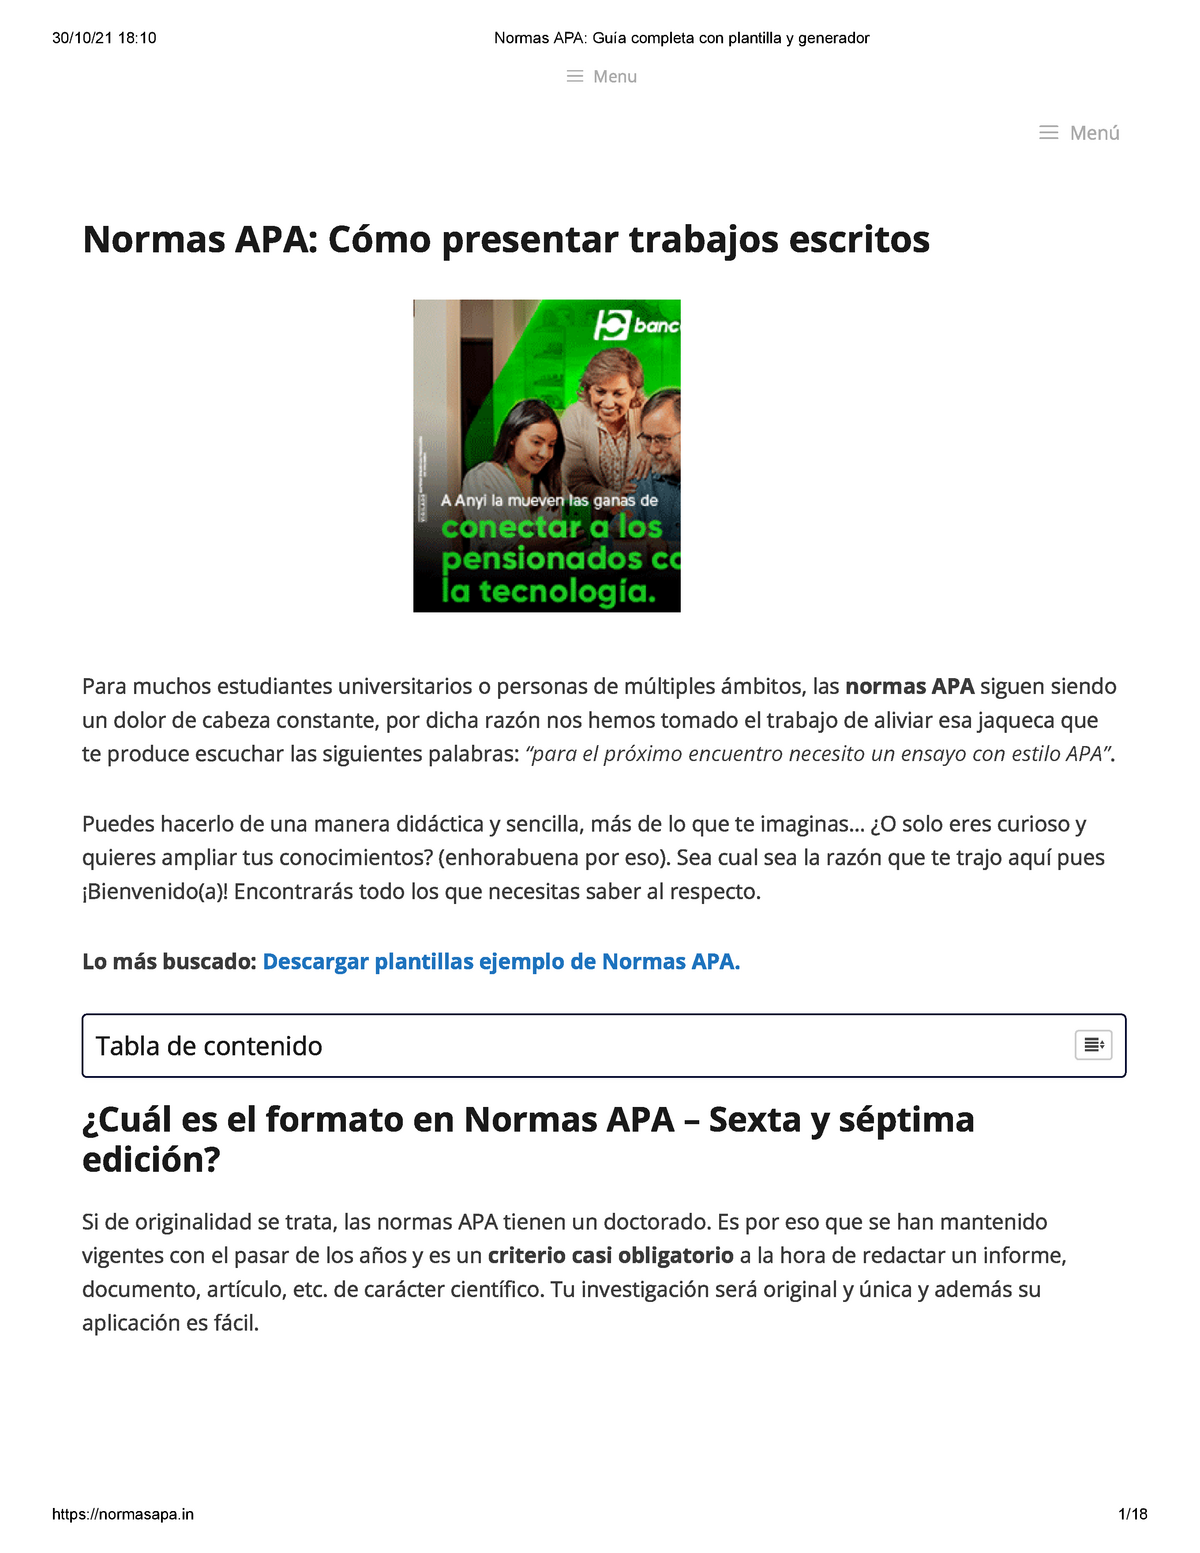 Normas APA Guía completa y Normas APA: Cómo presentar trabajos escritos - StuDocu